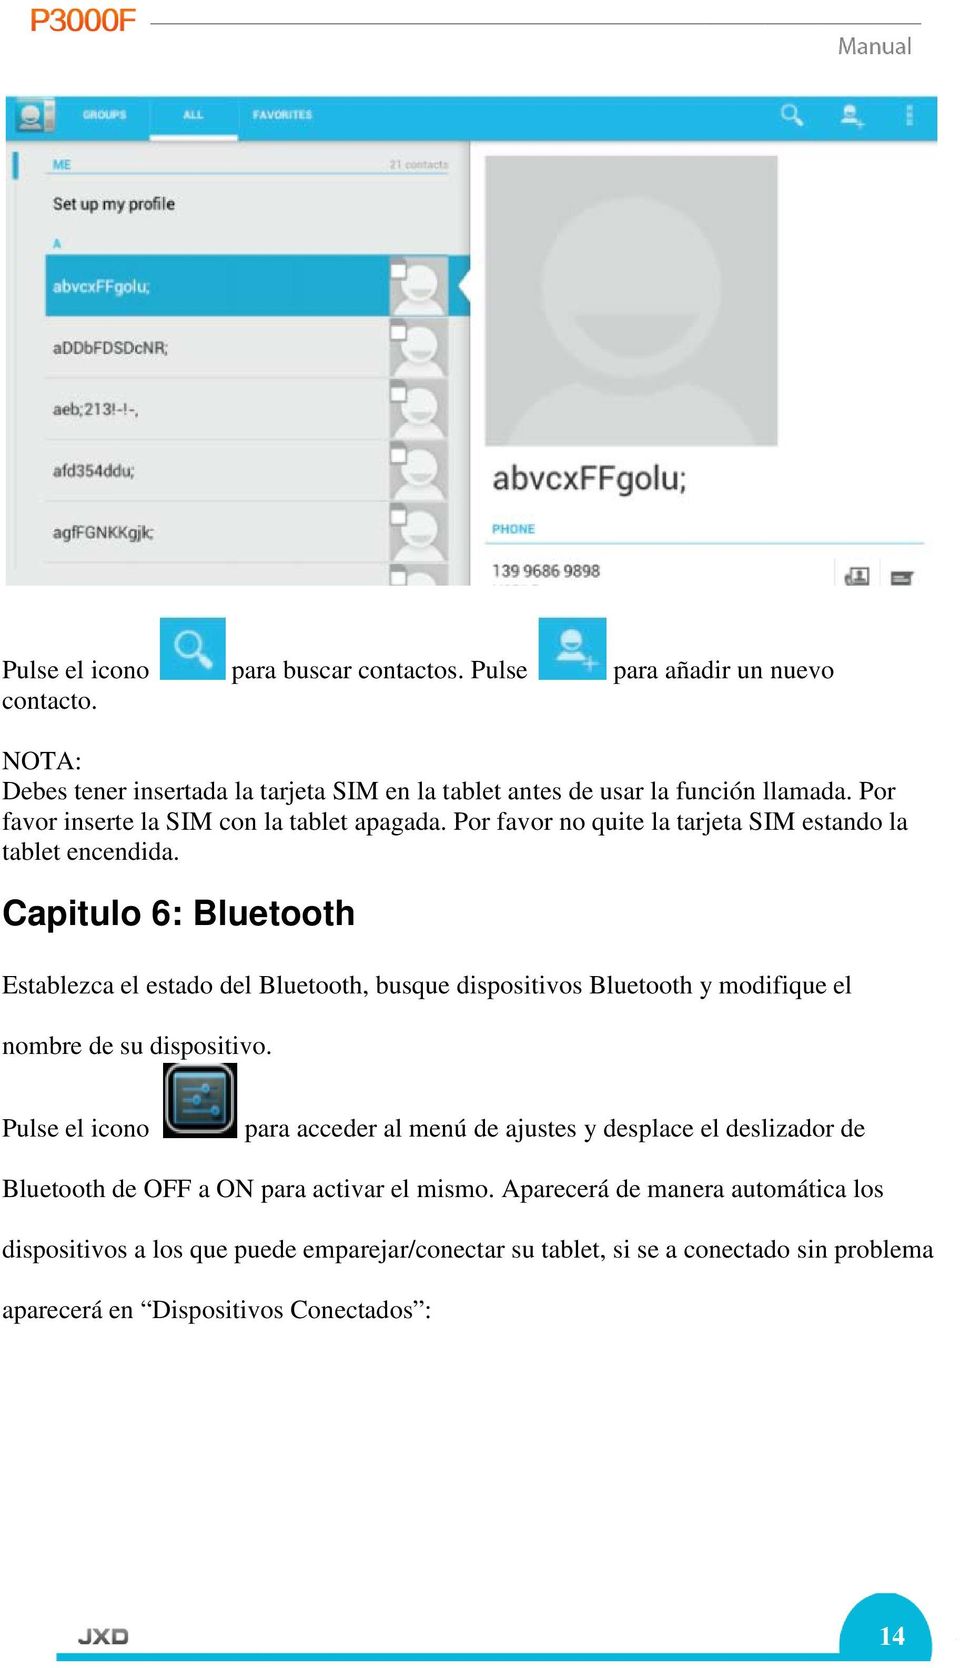 Capitulo 6: Bluetooth Establezca el estado del Bluetooth, busque dispositivos Bluetooth y modifique el nombre de su dispositivo.